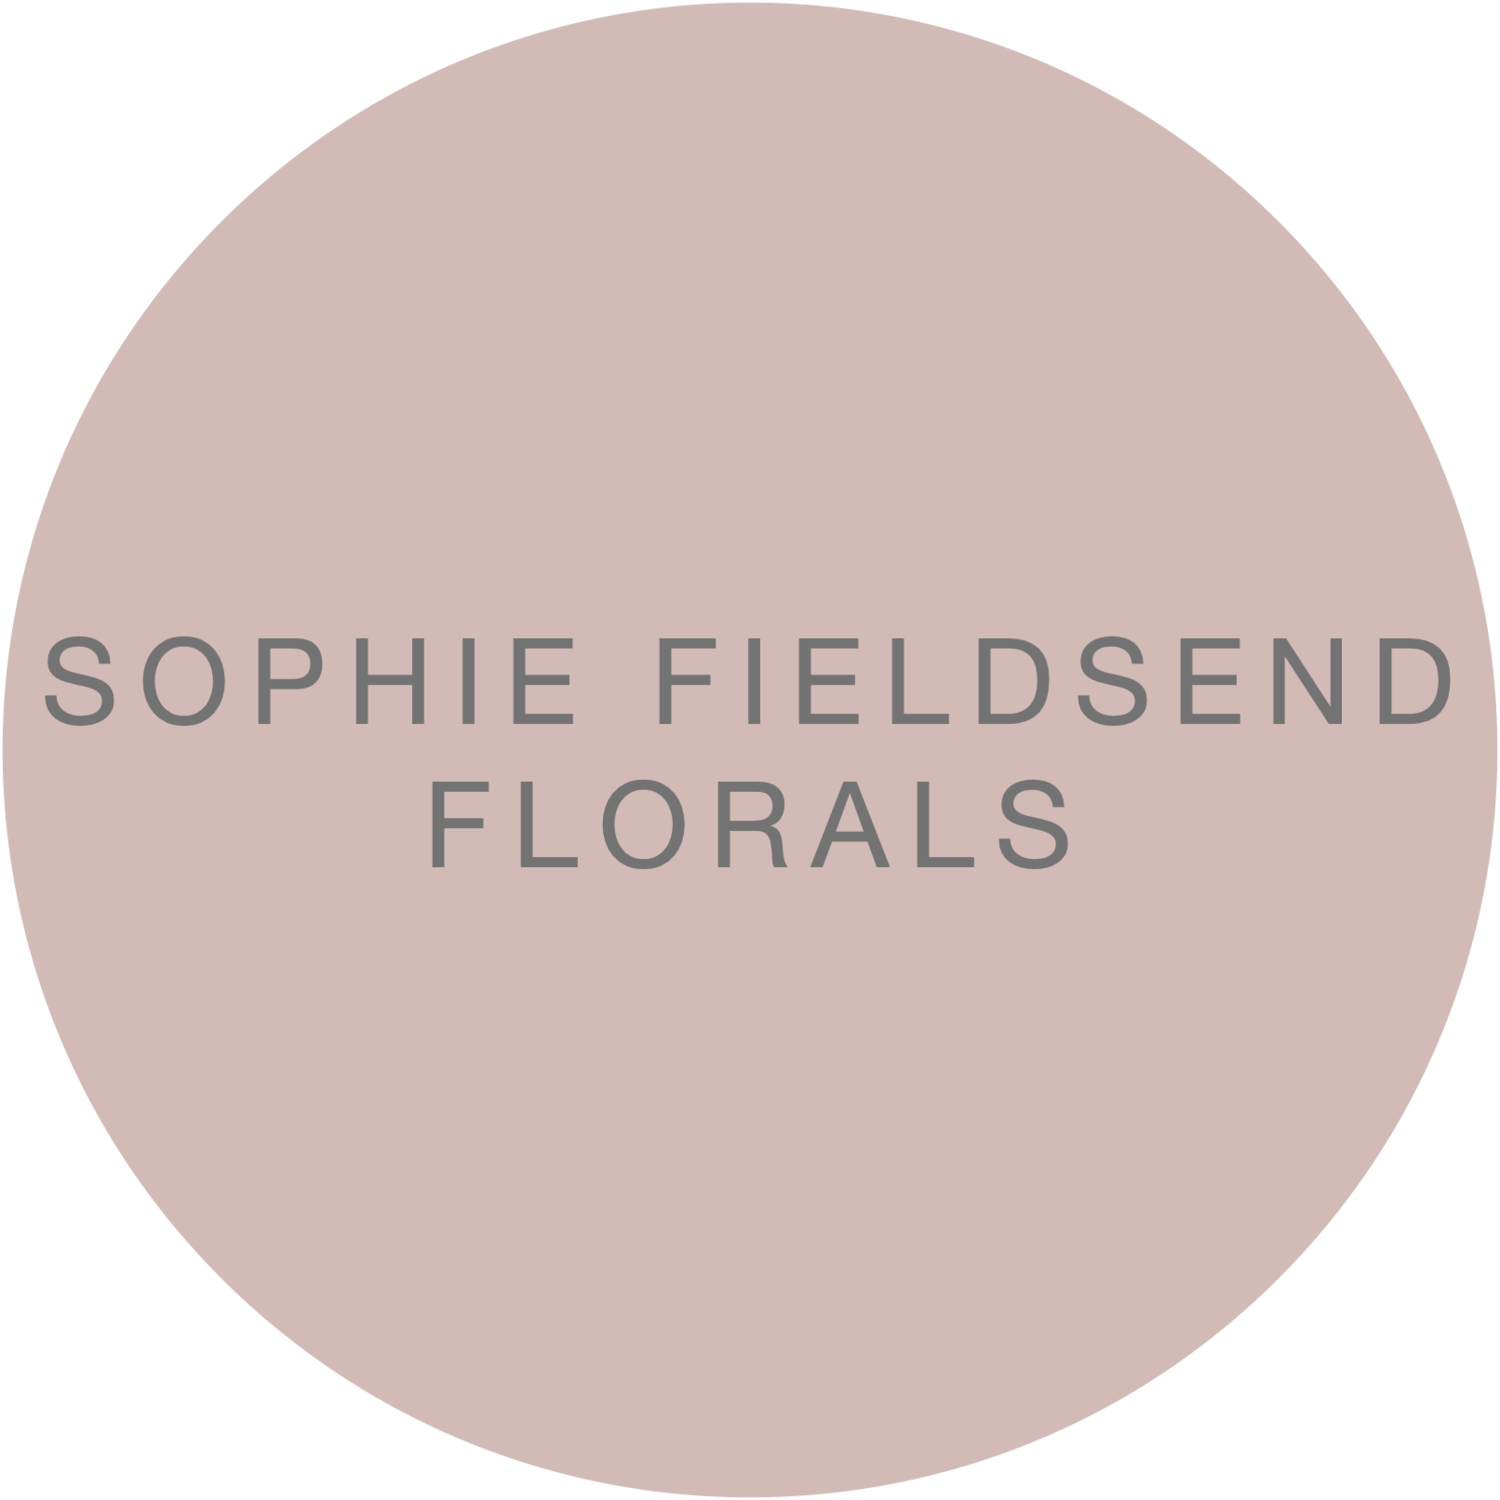 Sophie Fieldsend Florals